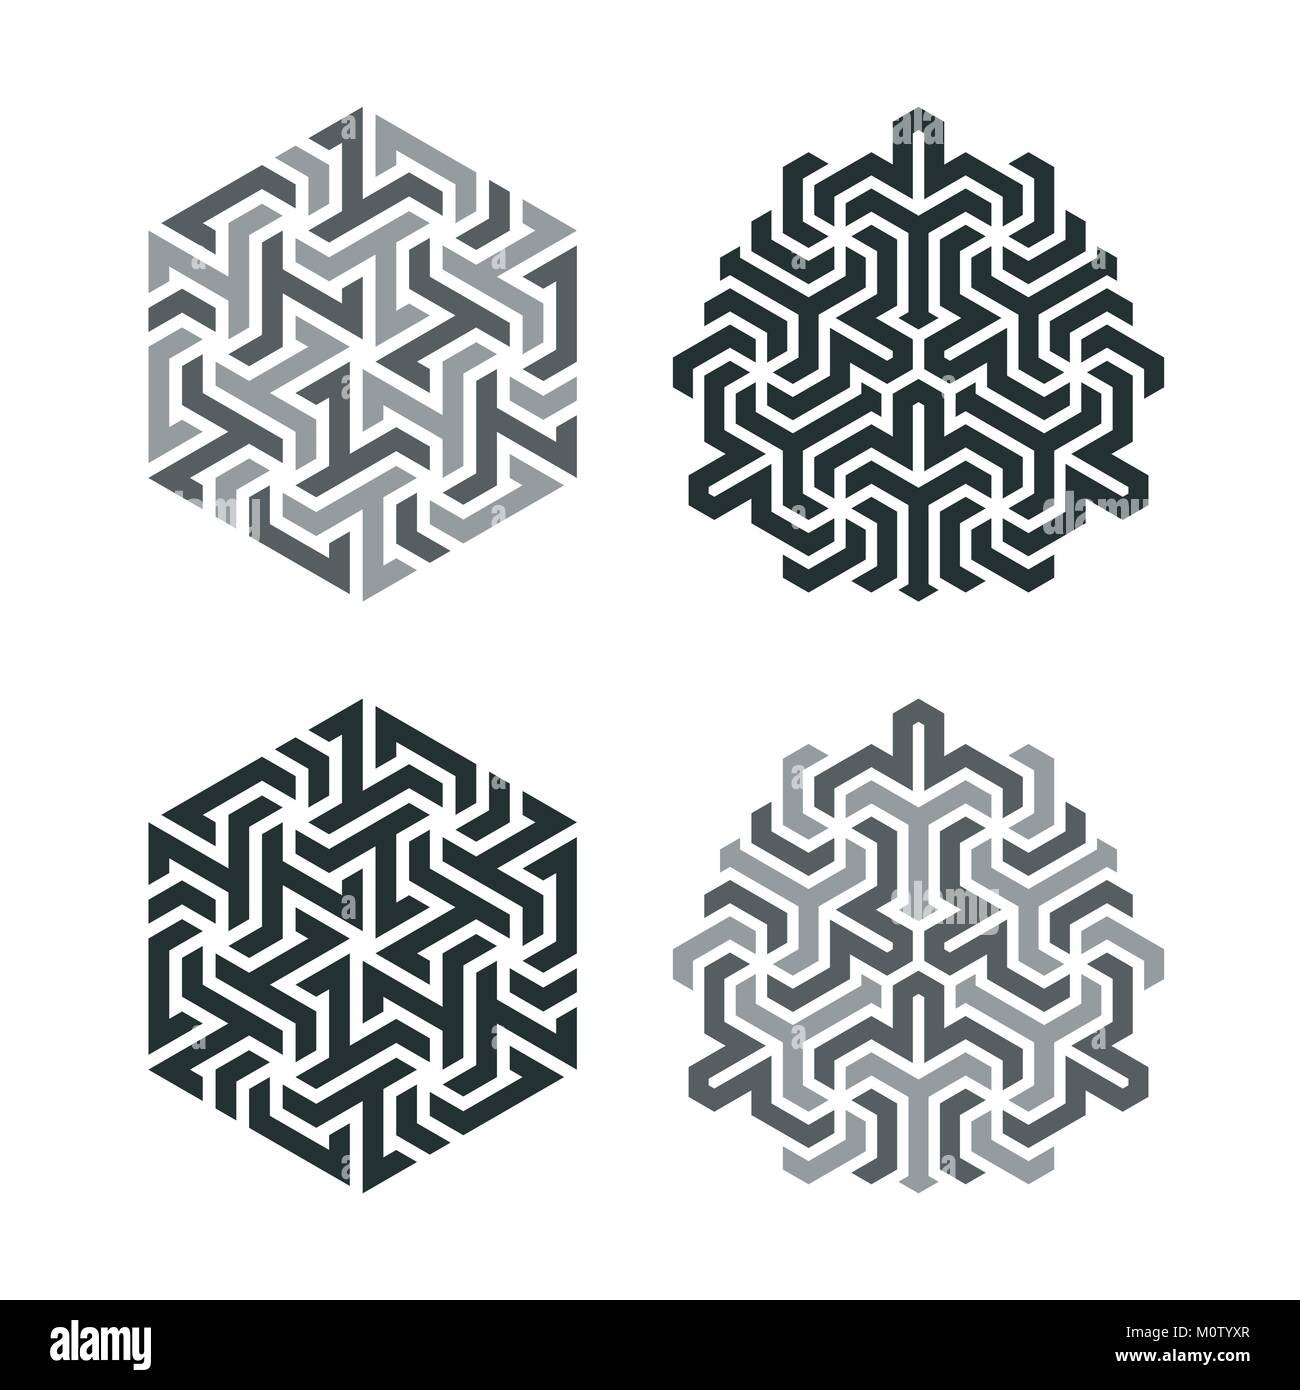 Tatuaggio di design in stile di tassellazione geometrica. Elemento di un modello geometrico basato su una griglia esagonale Illustrazione Vettoriale